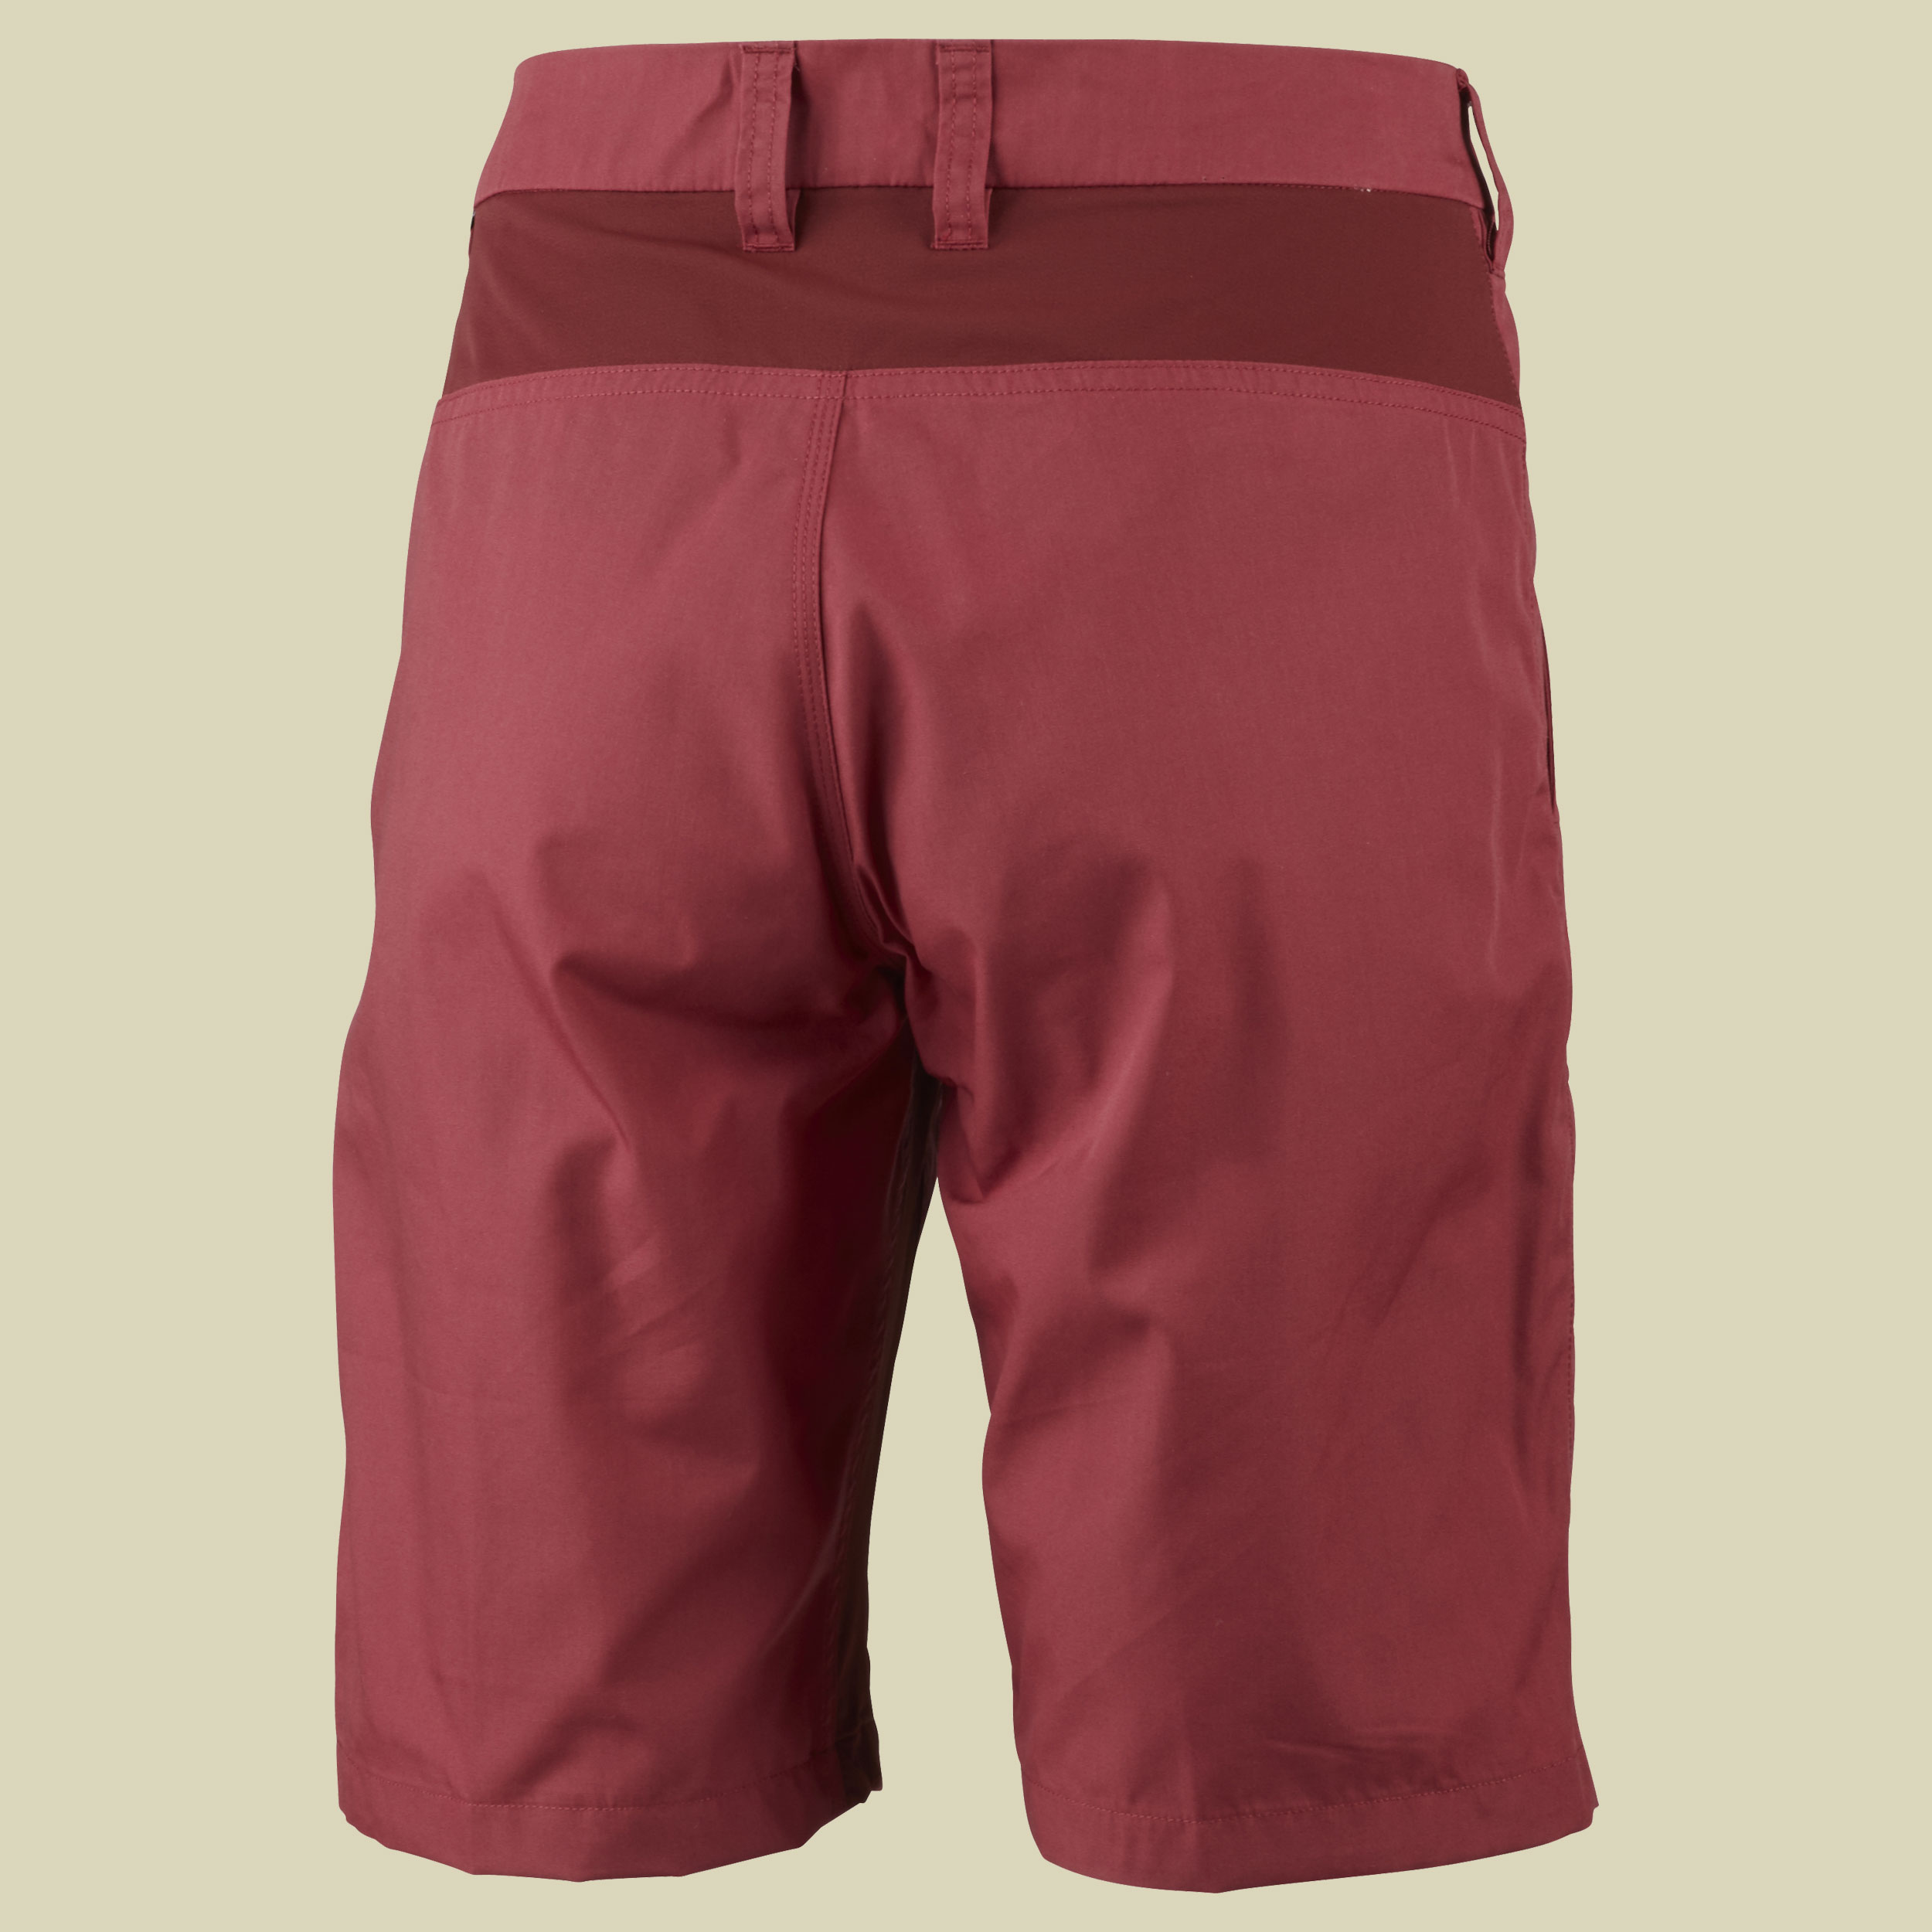 Lykka II Shorts Women Größe 38 Farbe garnet dark red